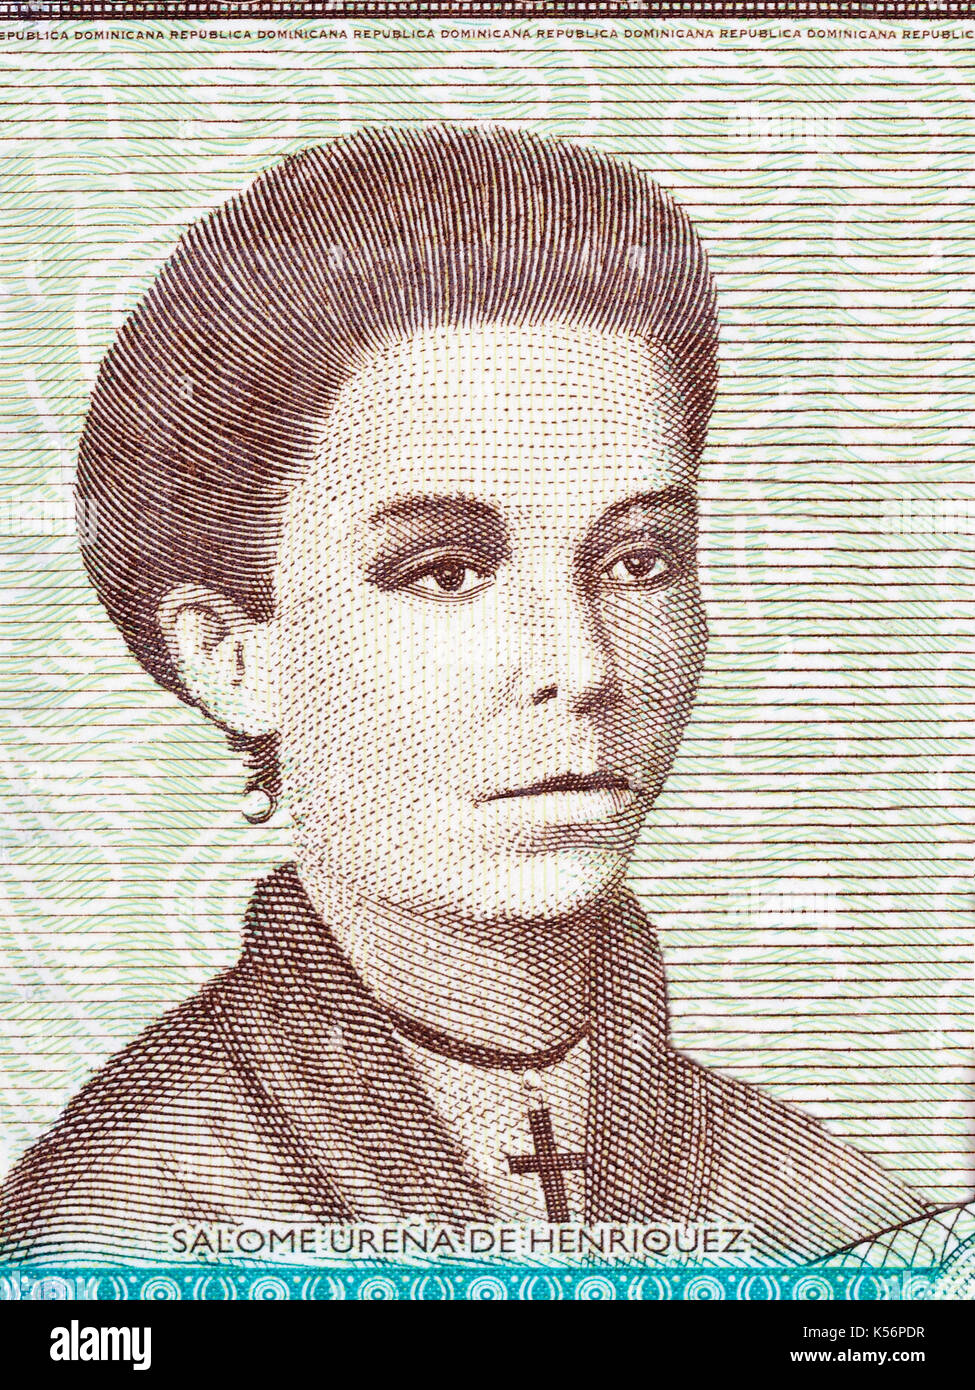 Salome Urena de Henriquez portrait from Dominican money Stock Photo